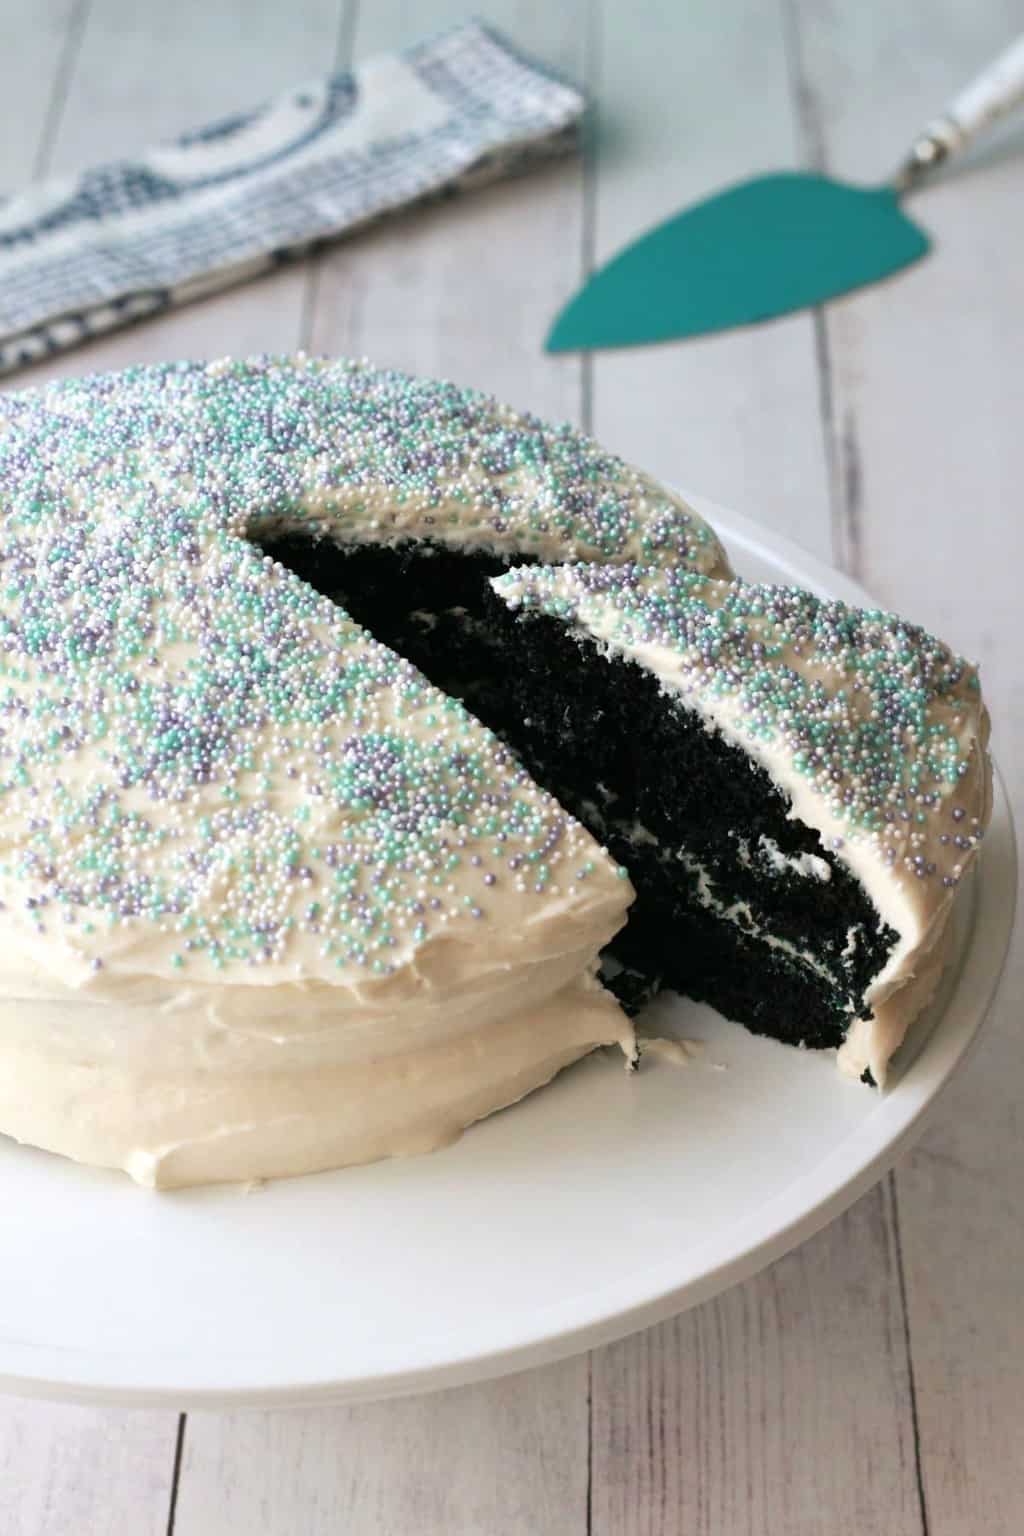 Vegan Blue Velvet Cake. Midnight blue cake frosted with vegan vanilla frosting. Simple, moist and delicious! #vegan #lovingitvegan #dessert #cake